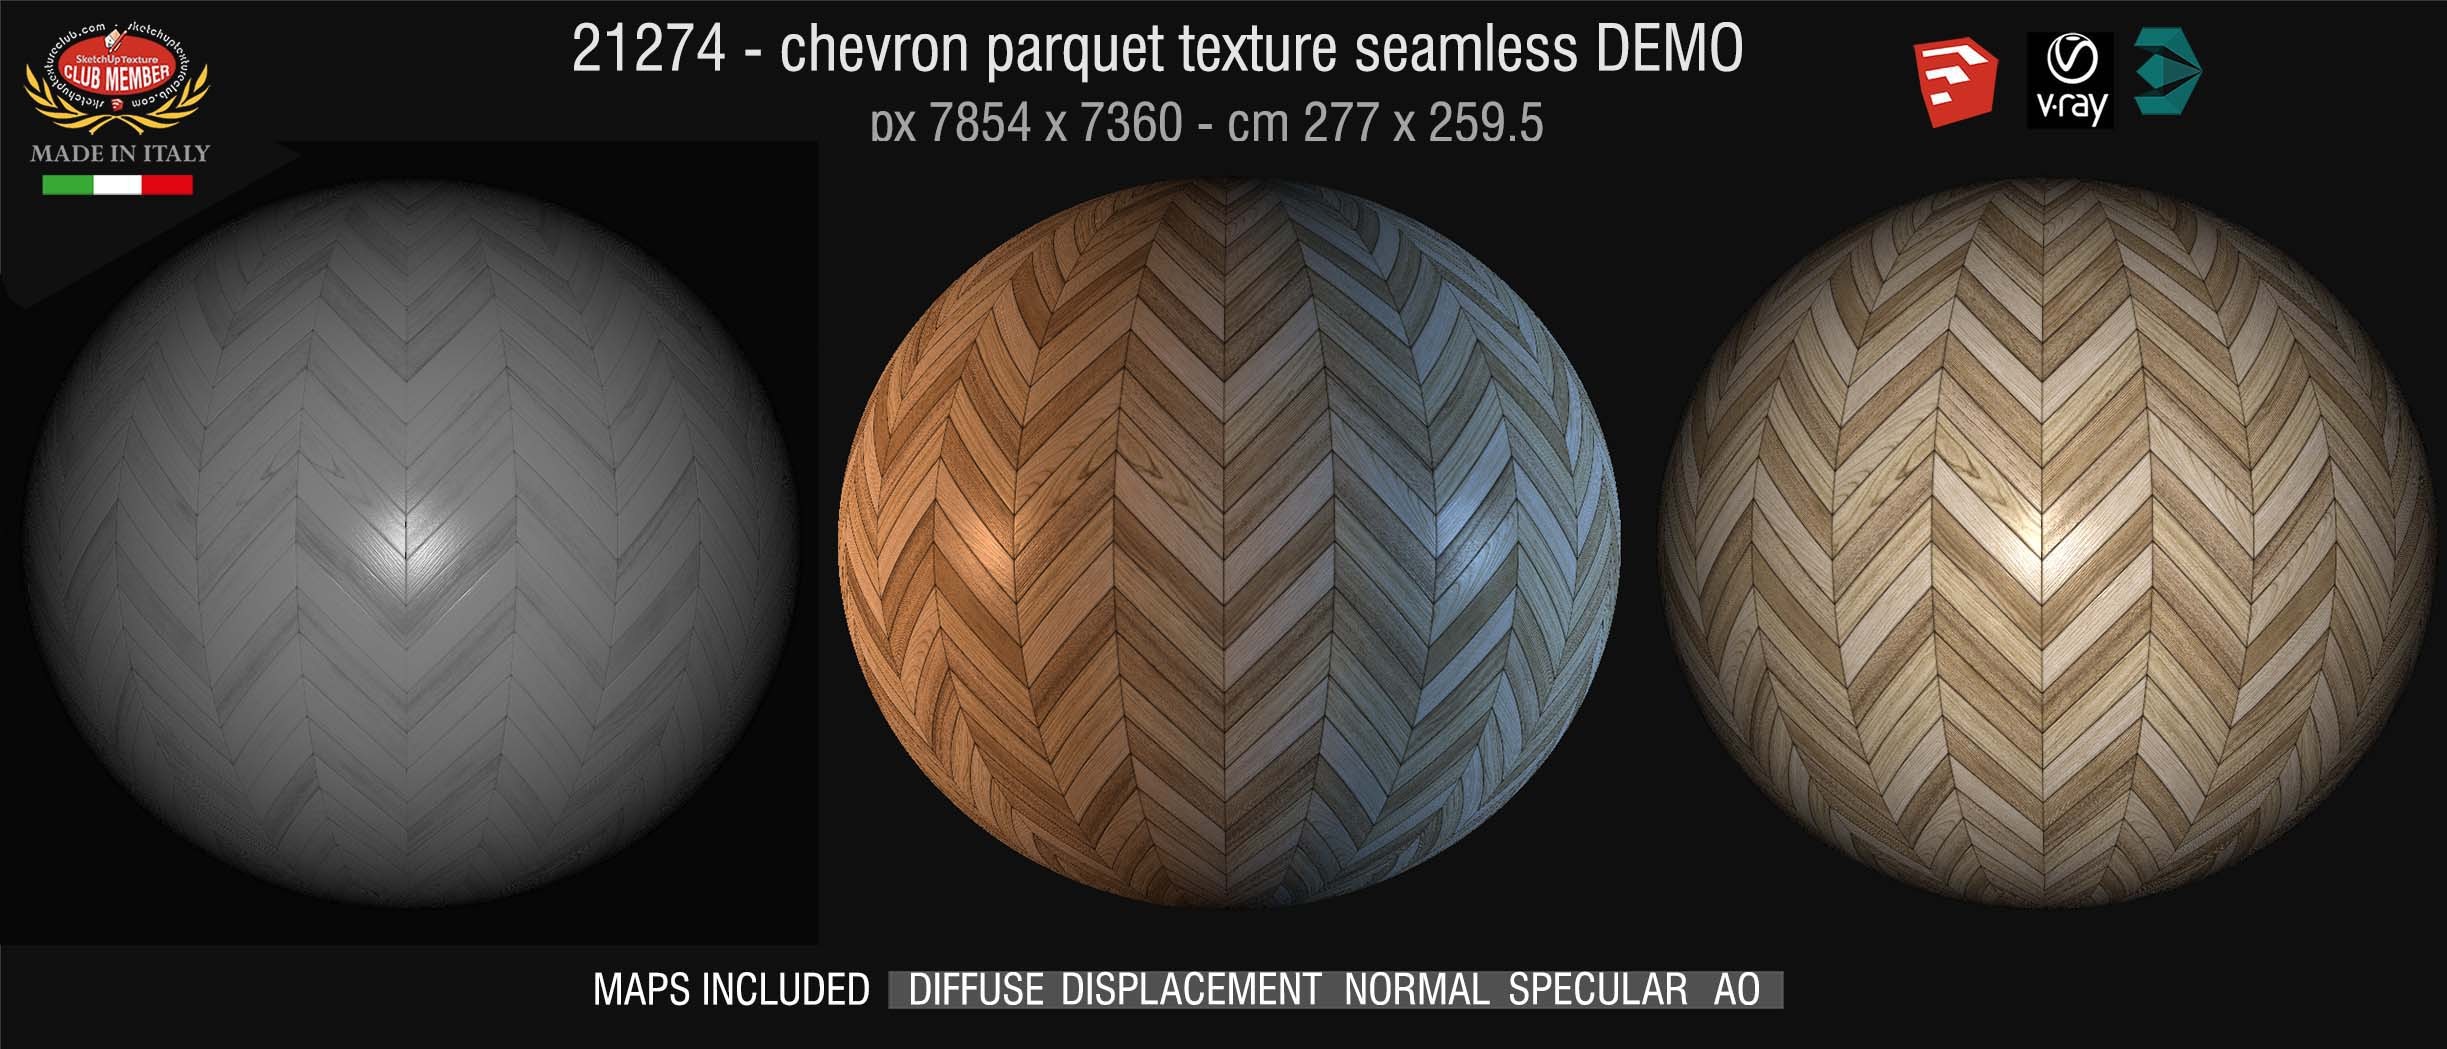 21274 HR Chevron parquet texture + maps DEMO